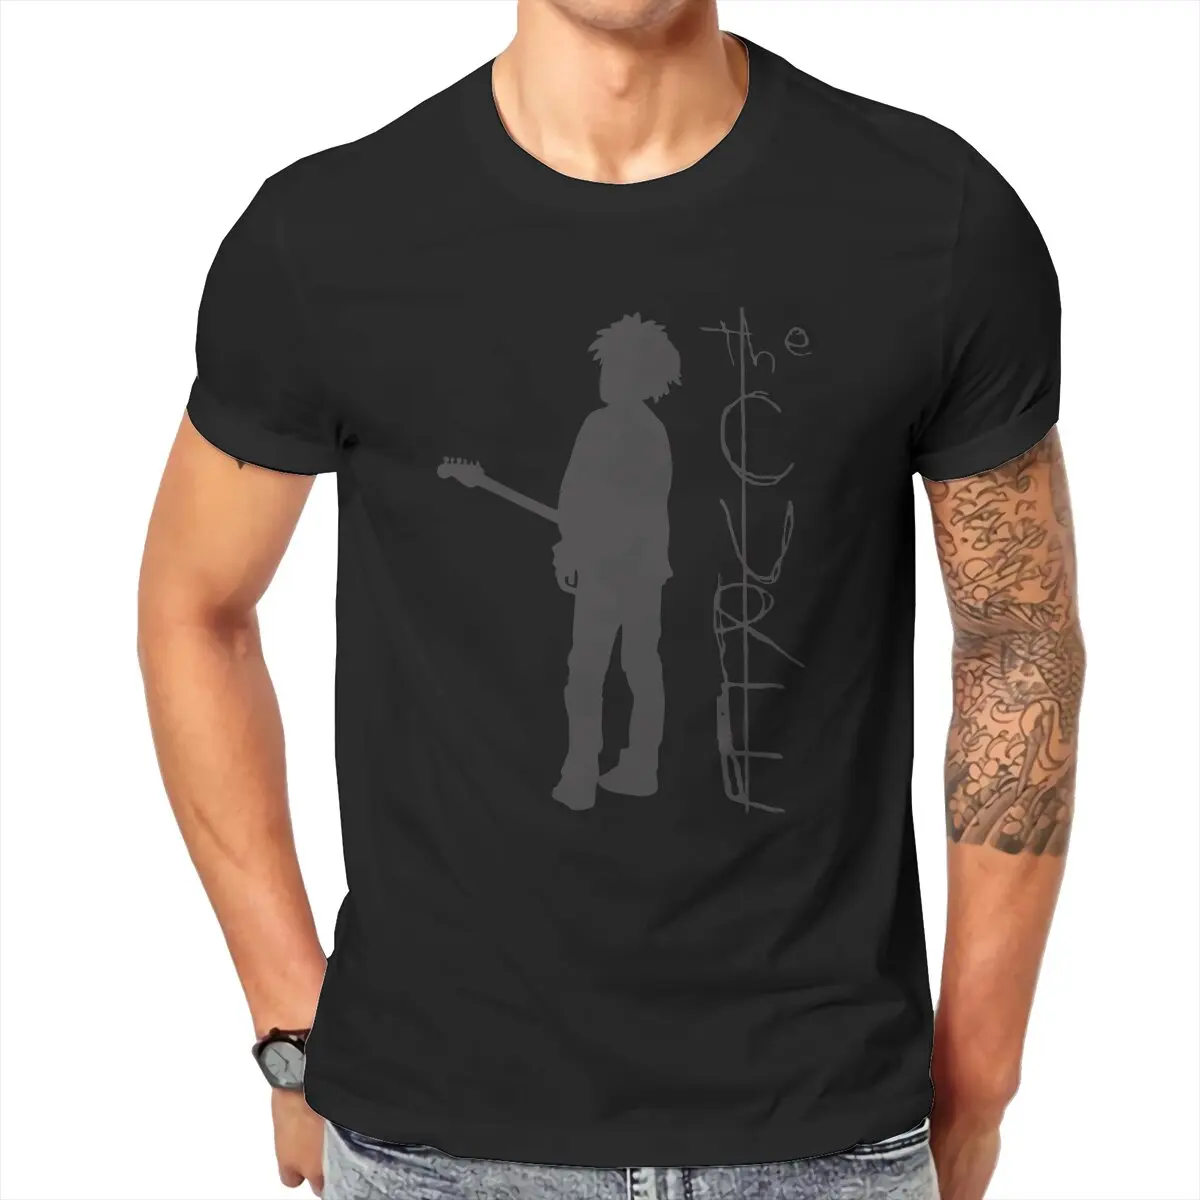 

Мужская футболка с постером The Cure, новинка, футболки из 100% хлопка с круглым вырезом, футболка с надписью Rock Band на английском языке, одежда с ко...